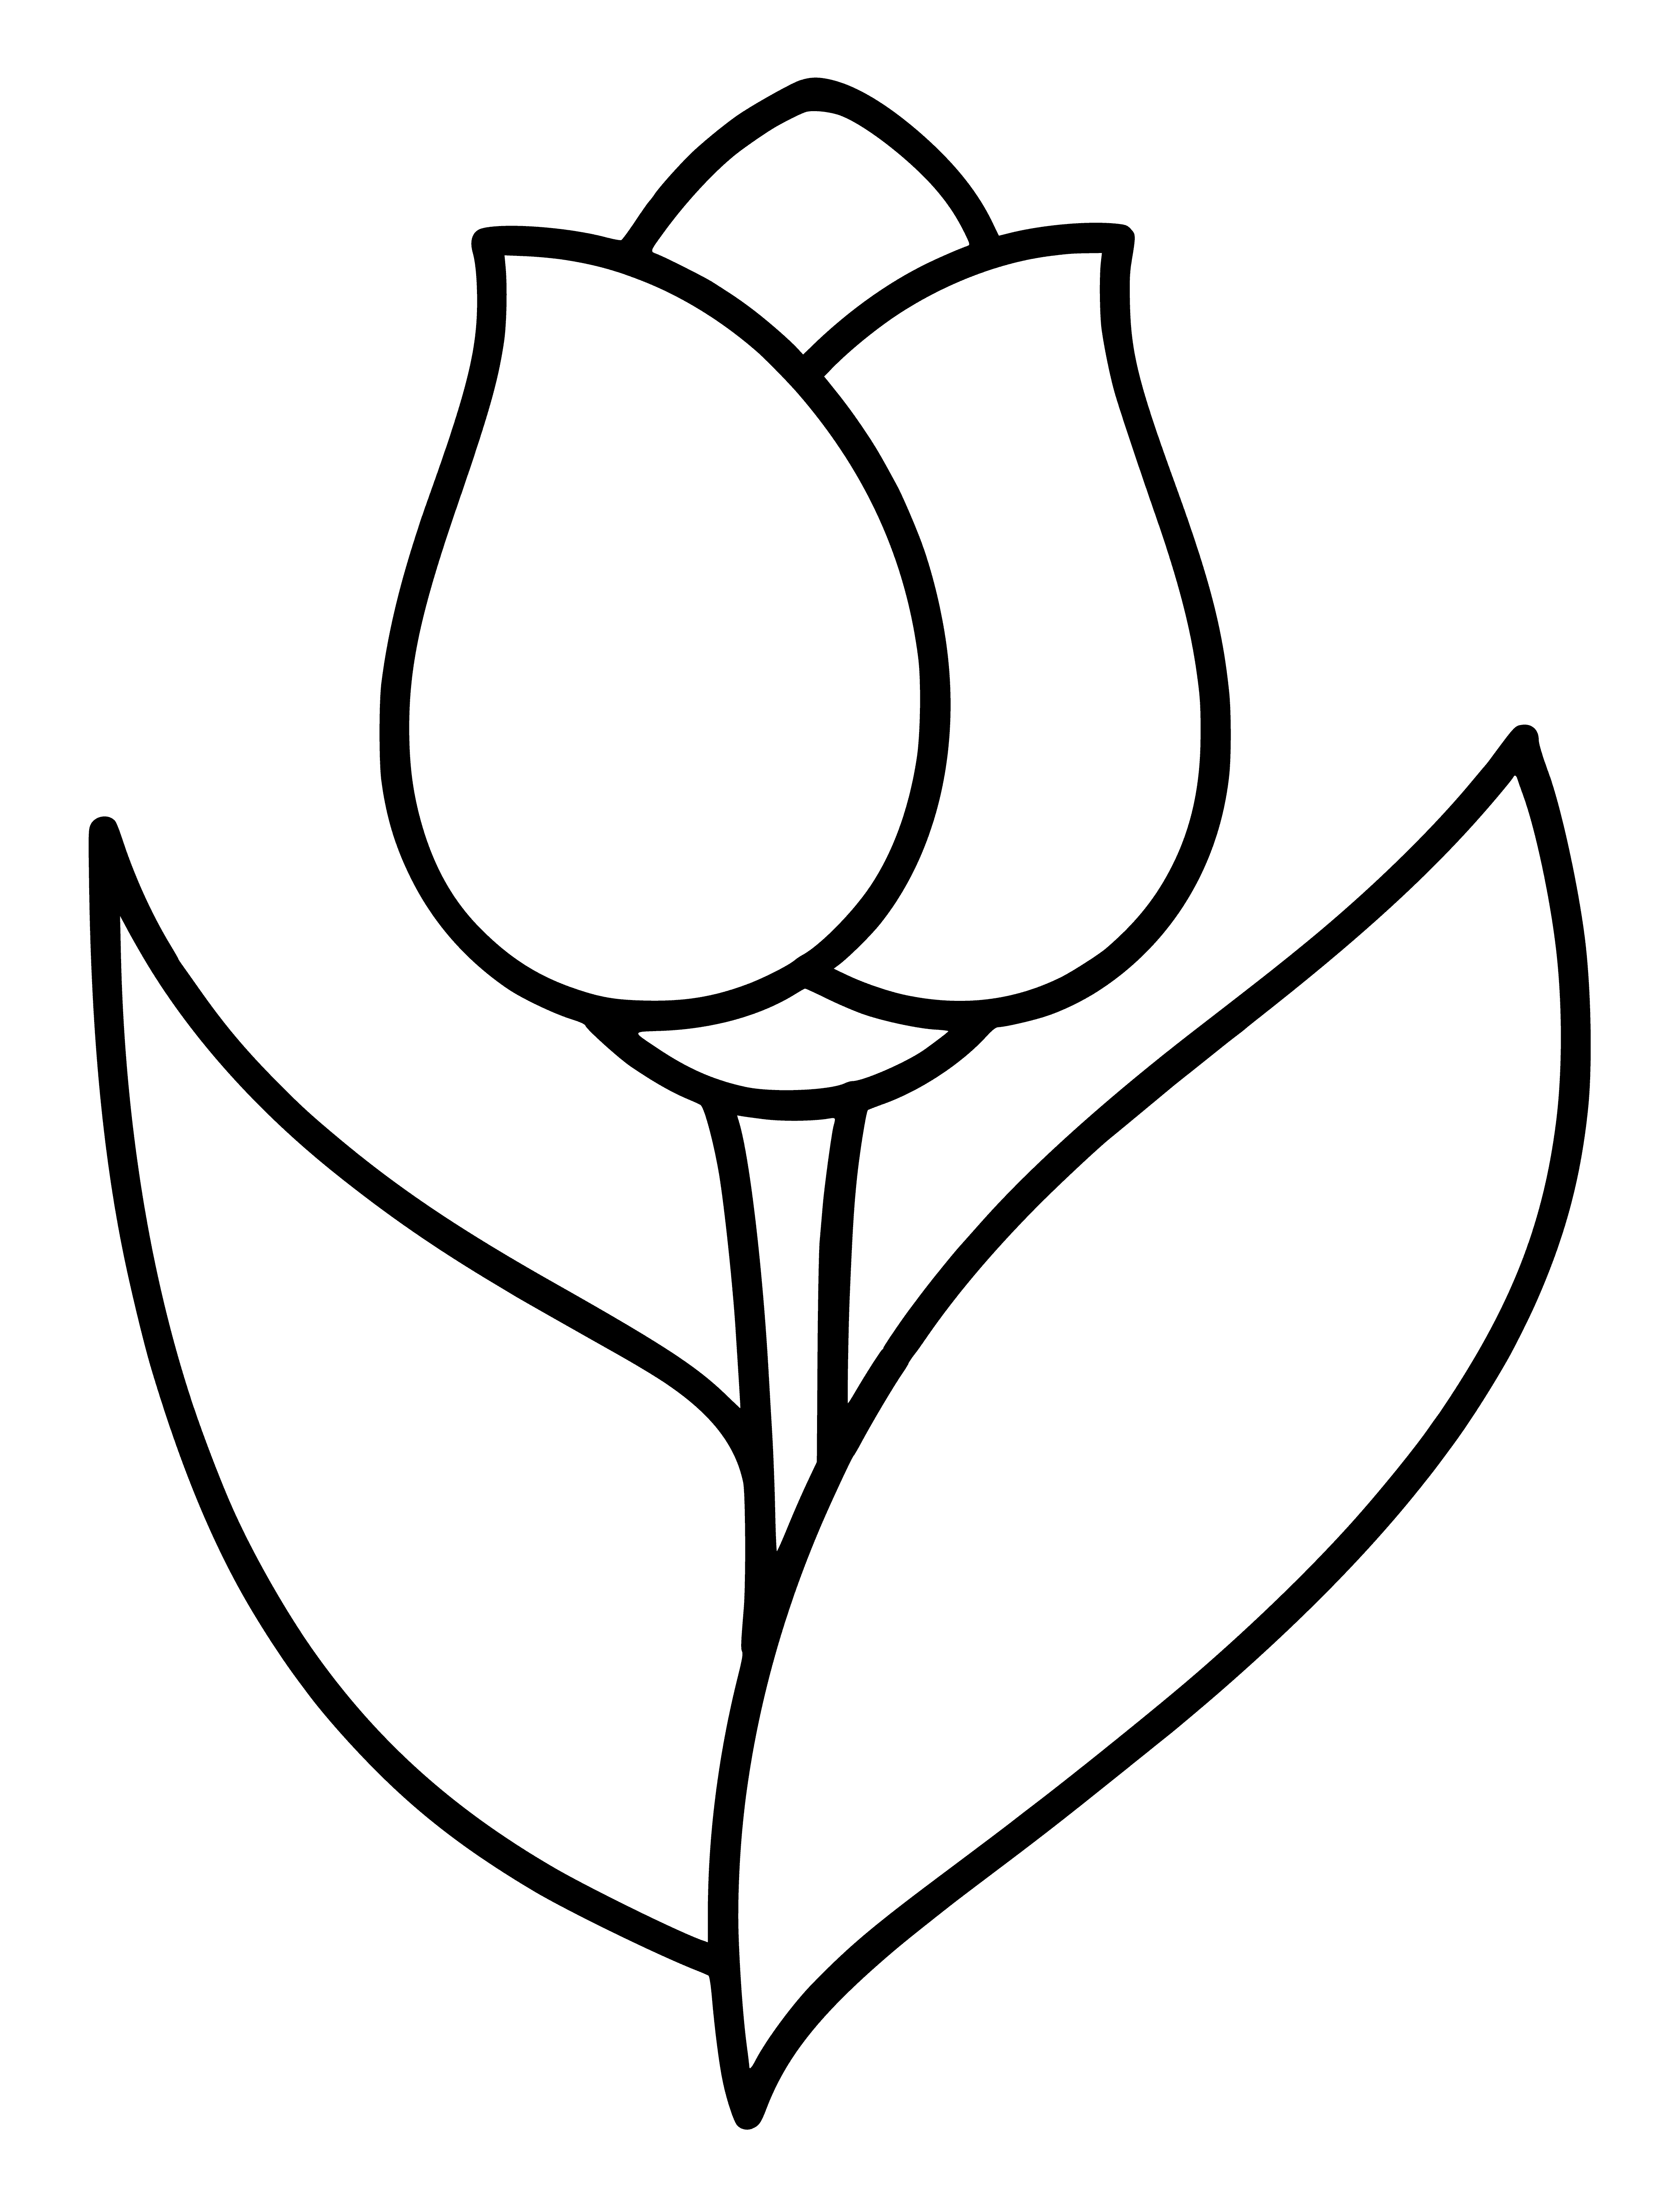 Tulipán página para colorear